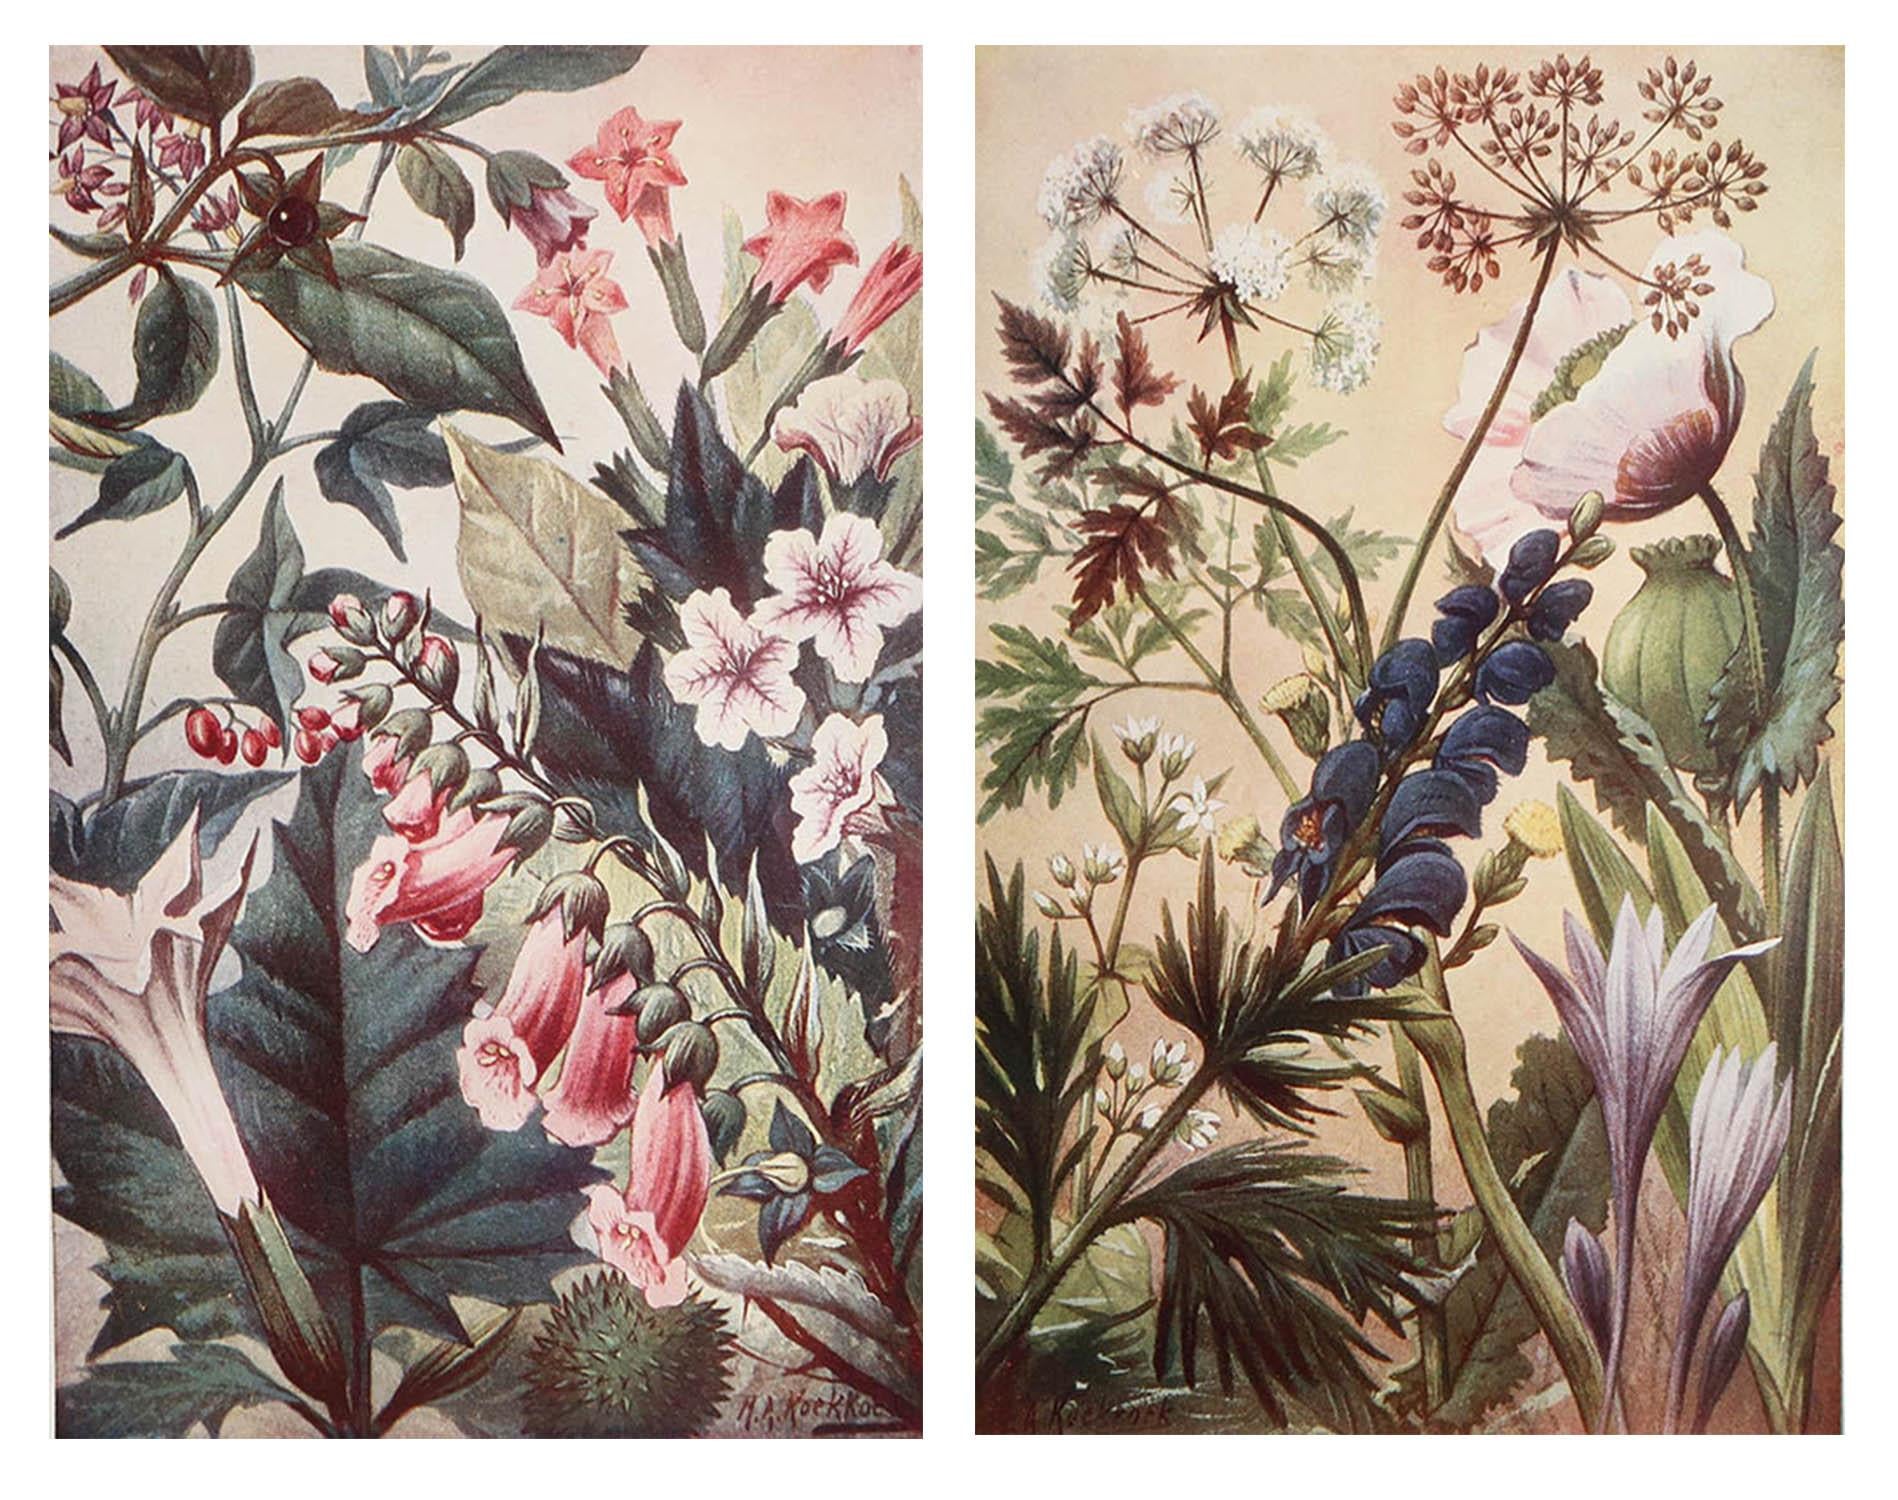 De superbes images de plantes médicinales

Non encadré.

Publié, vers 1900.





